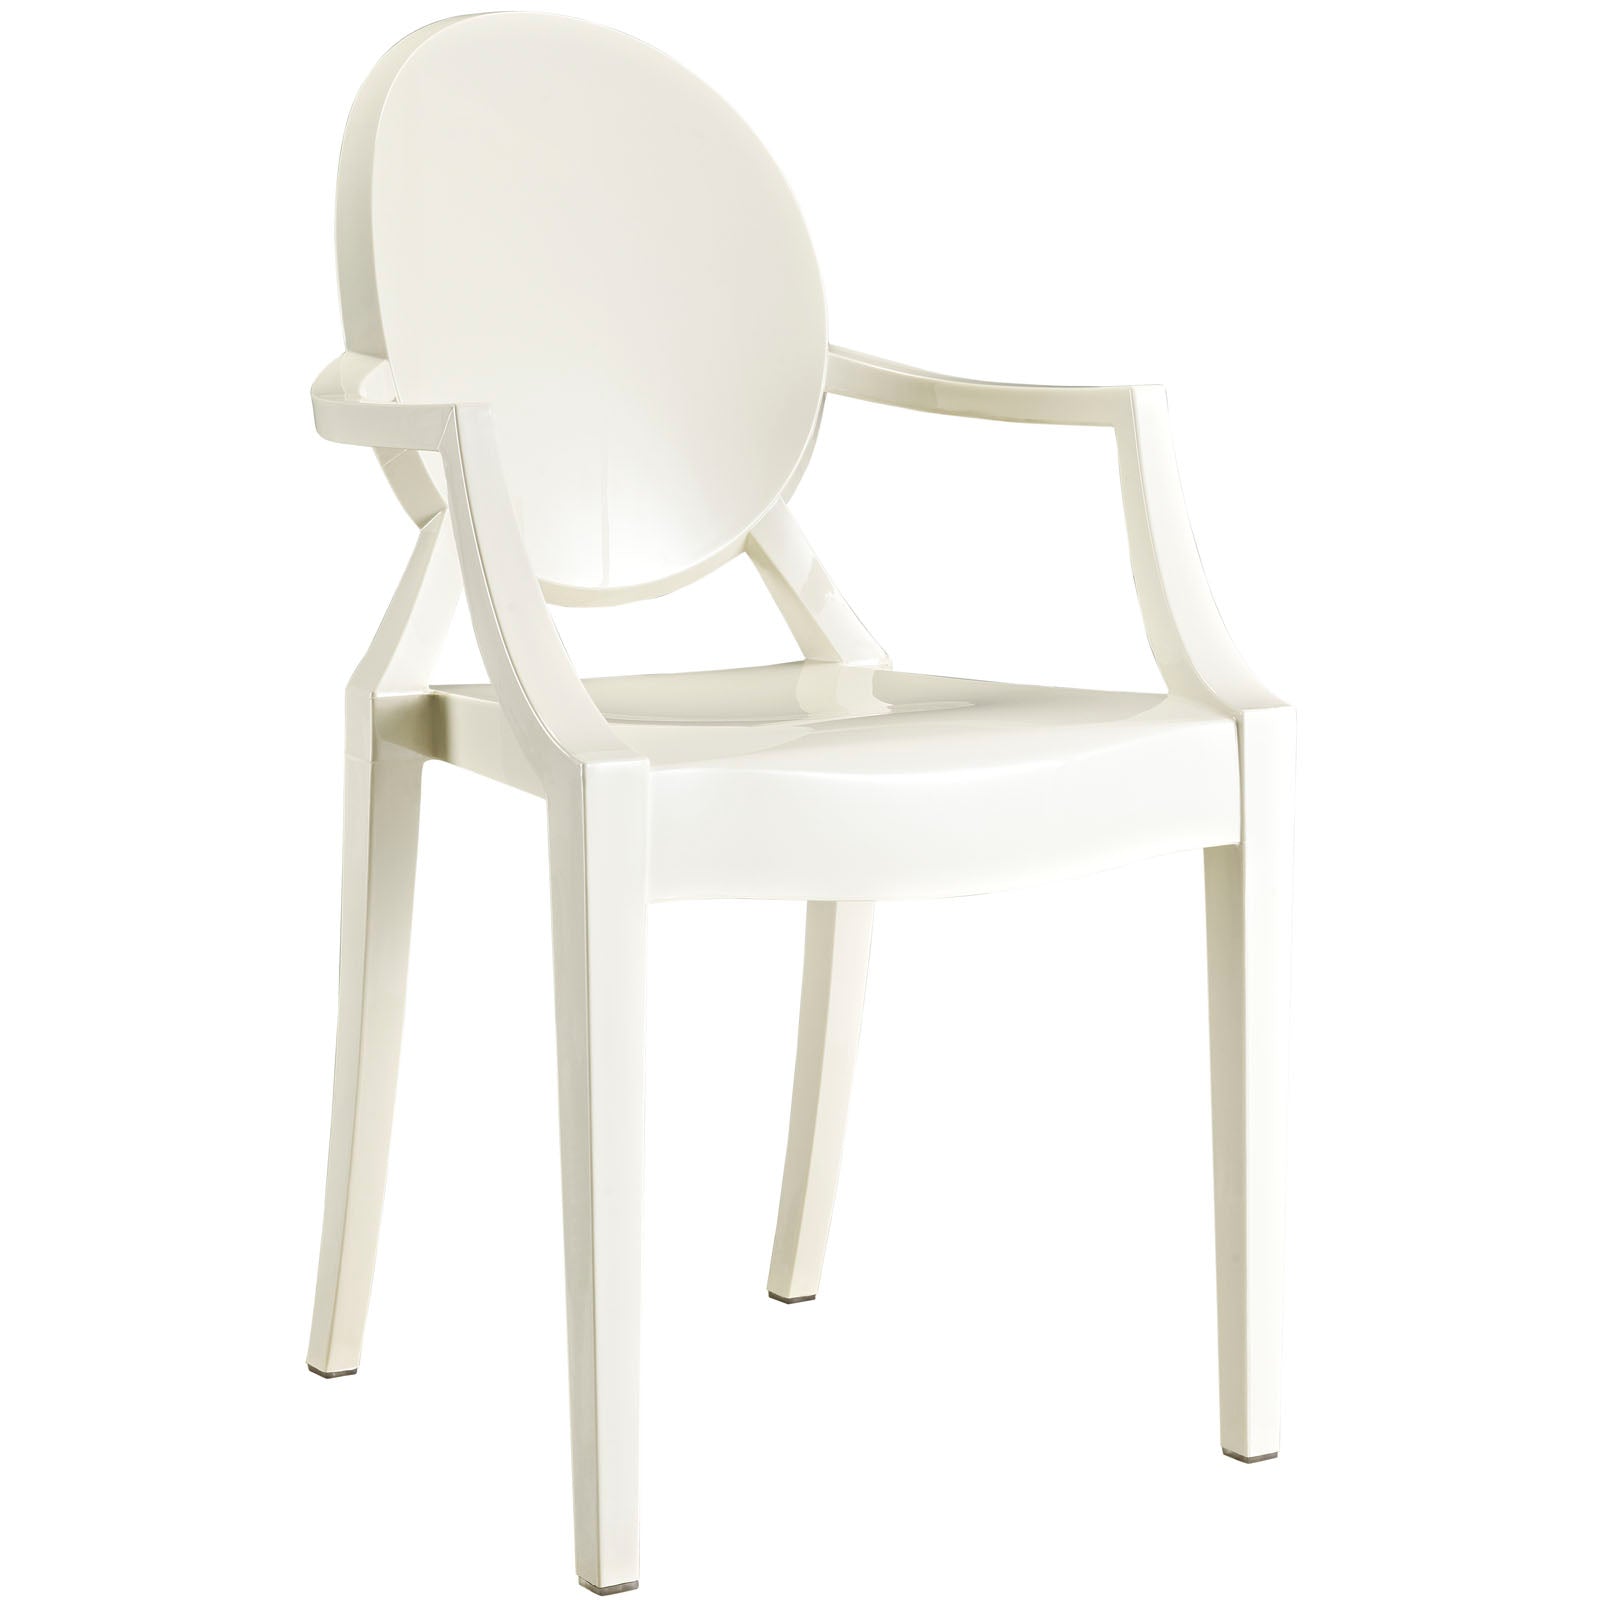 Casper Dining Chair - White